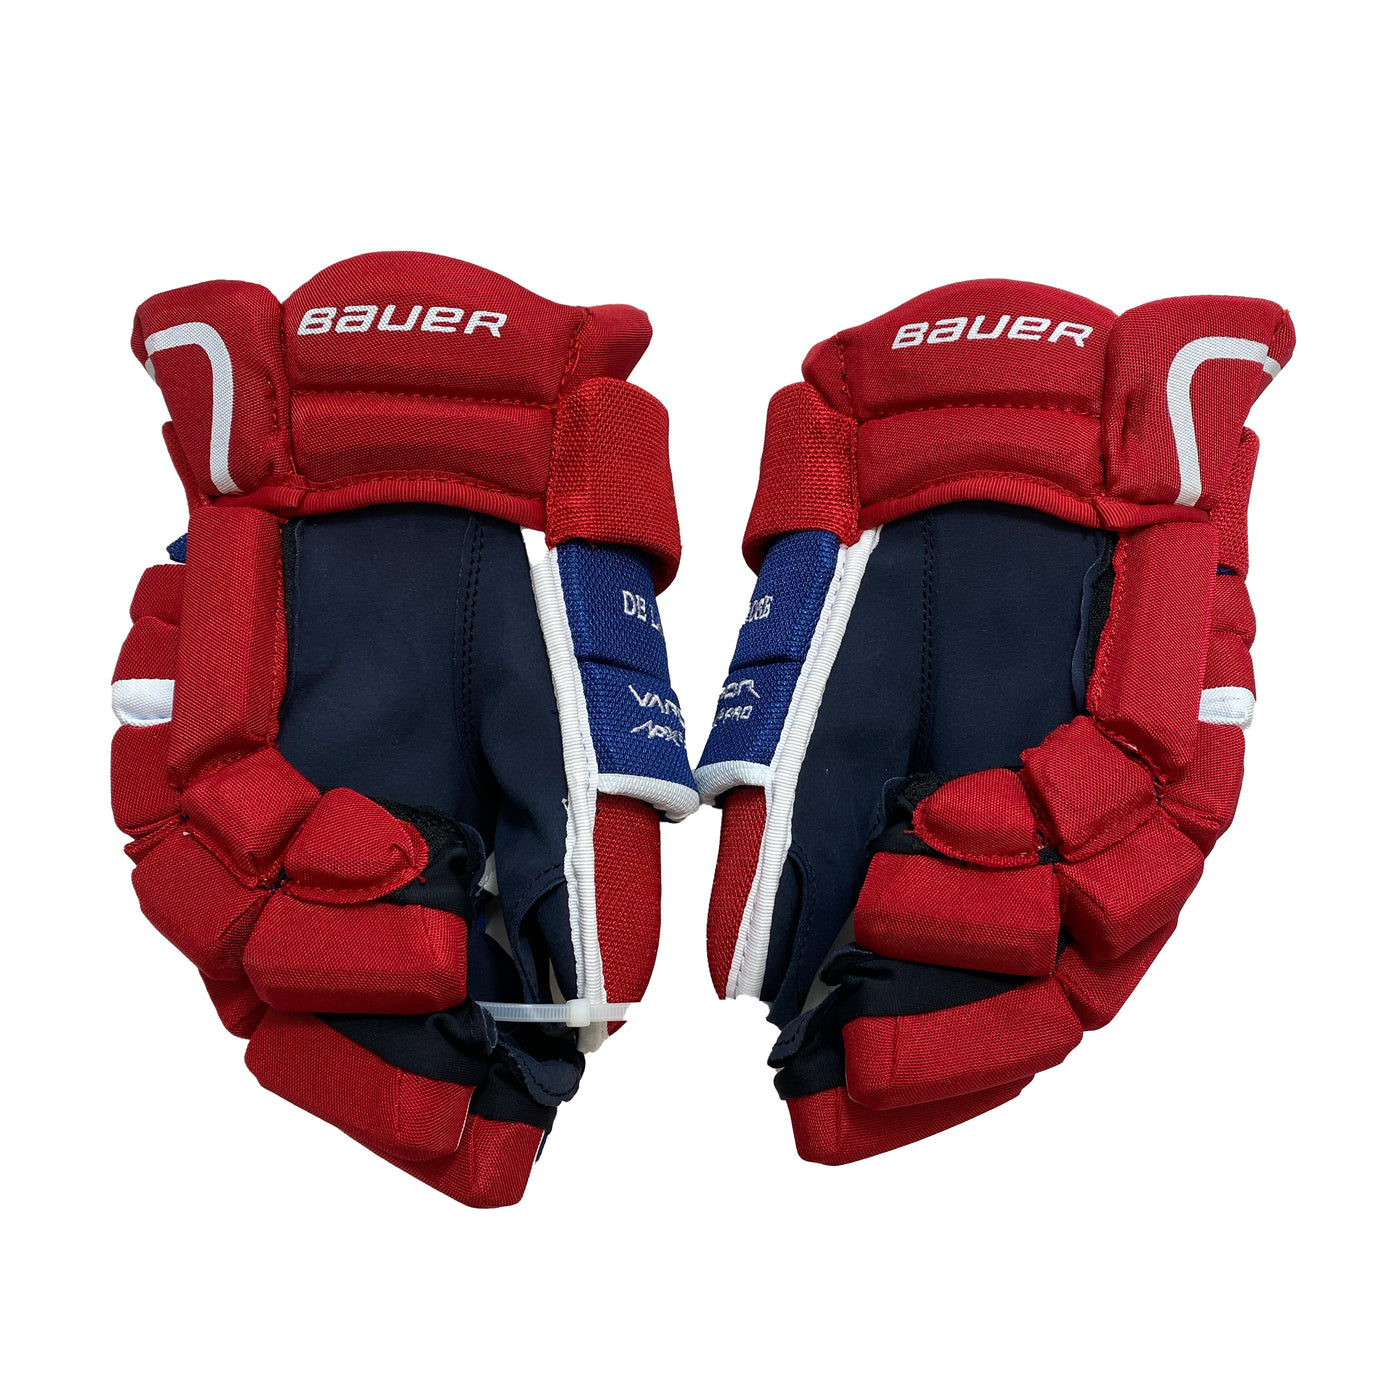 Bauer Vapor Apx2 Pro - Montreal Canadiens - Pro Stock Gloves - Jacob de la Rose